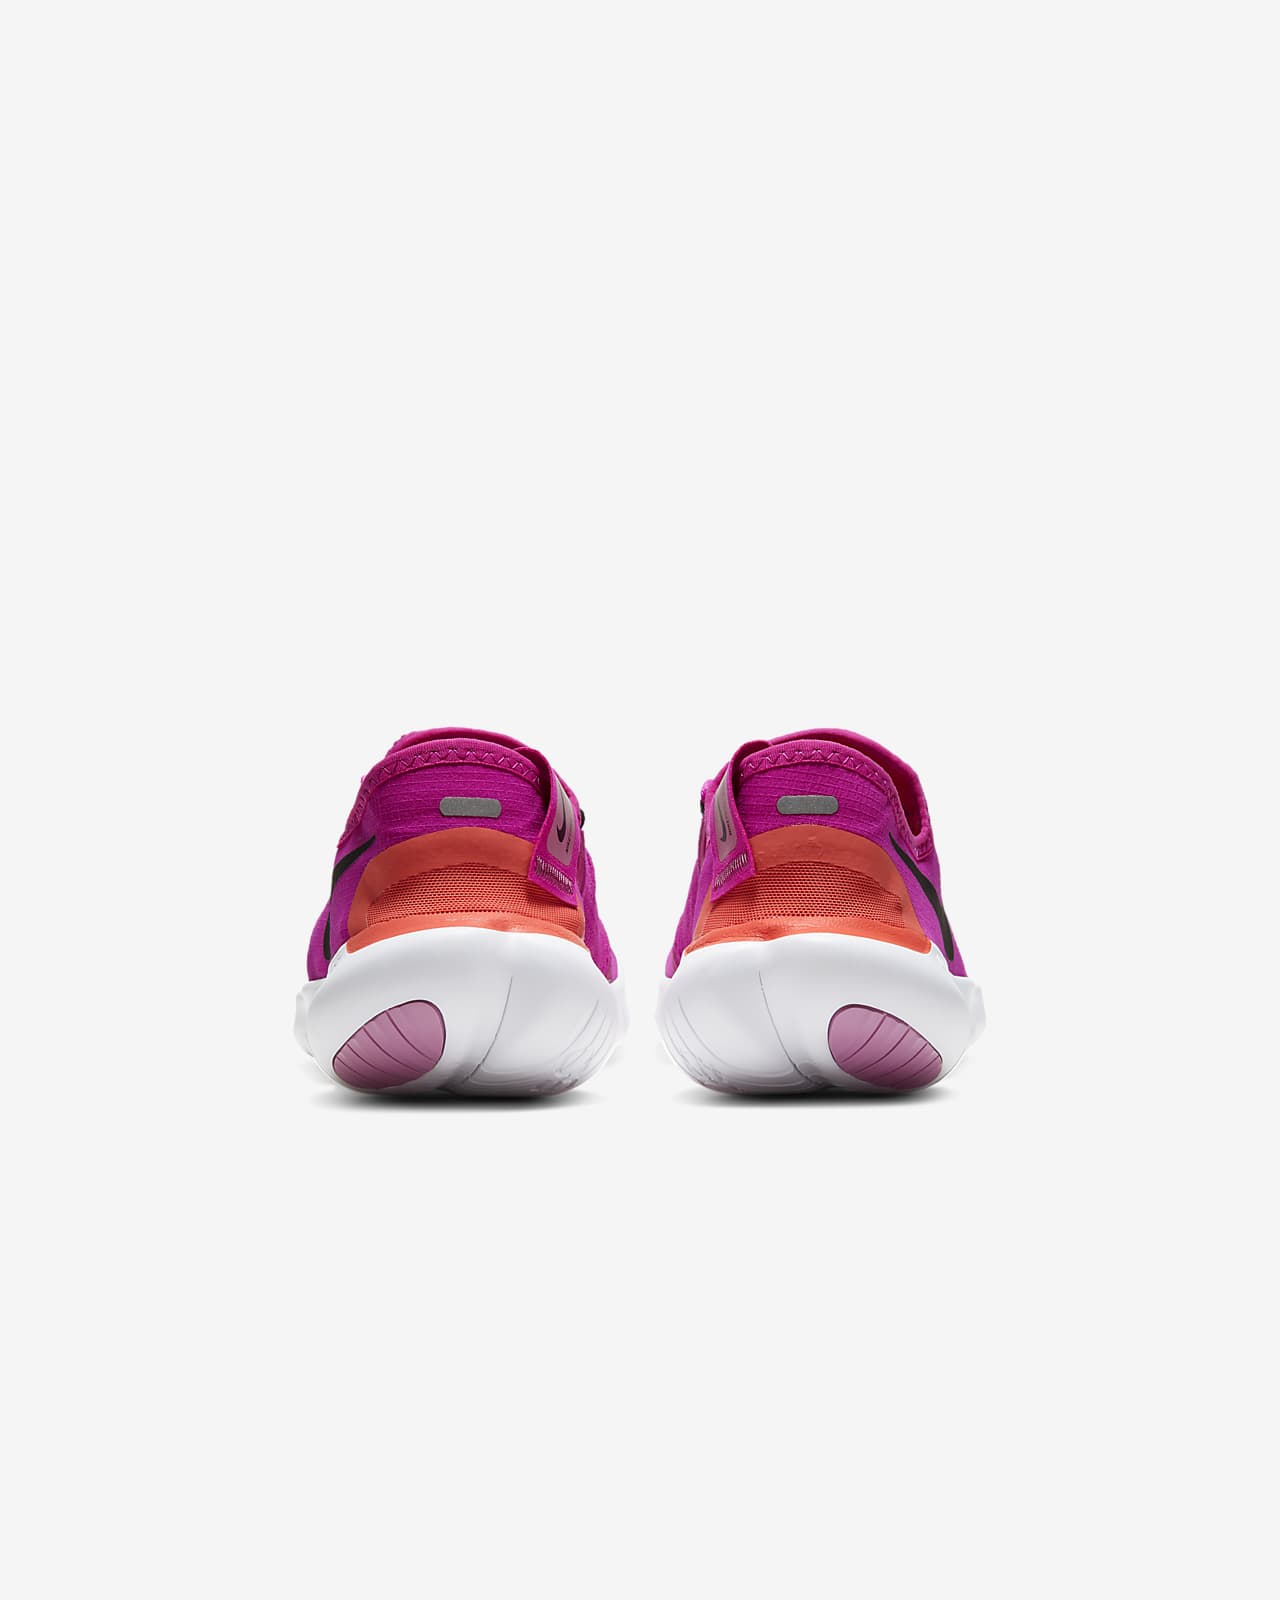 nike free 5.0 women's running shoes